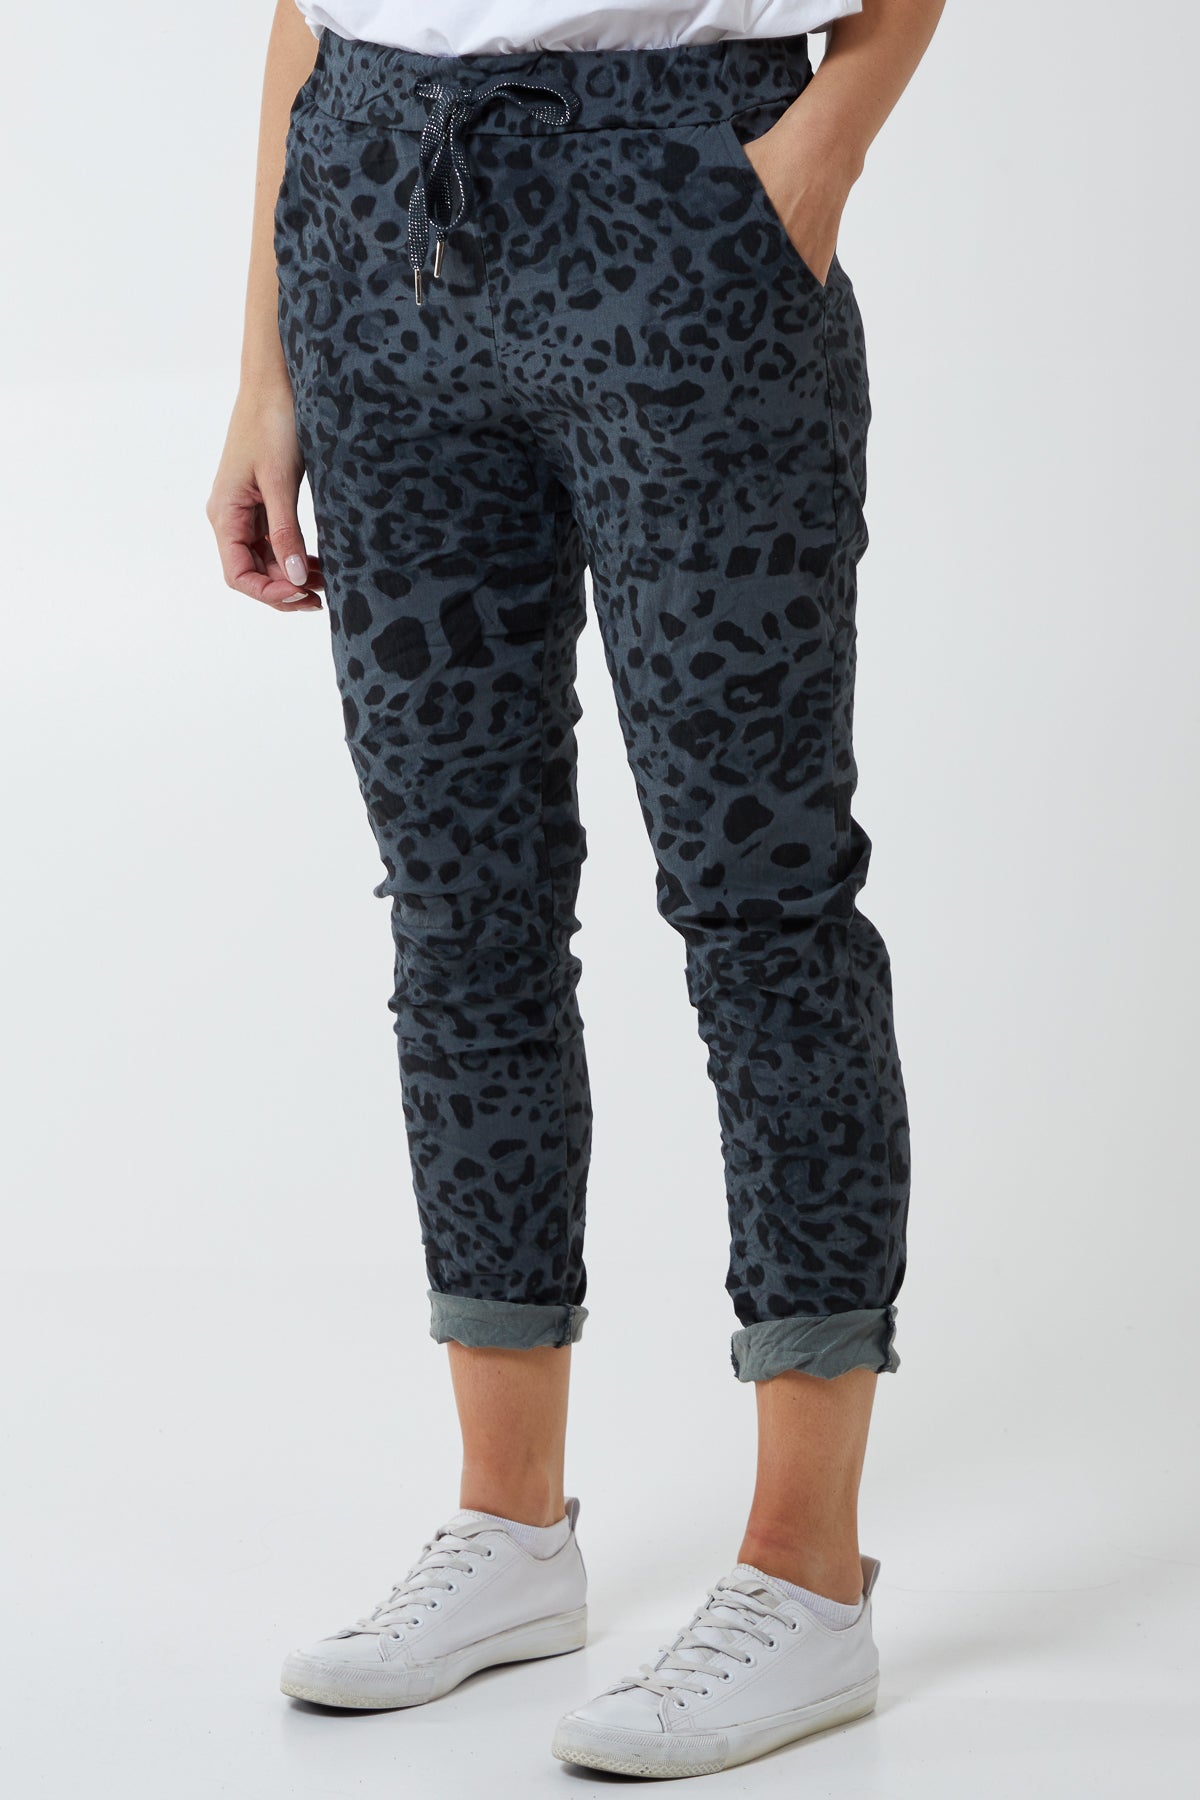 Magic Super Stretch Leopard Print Trousers